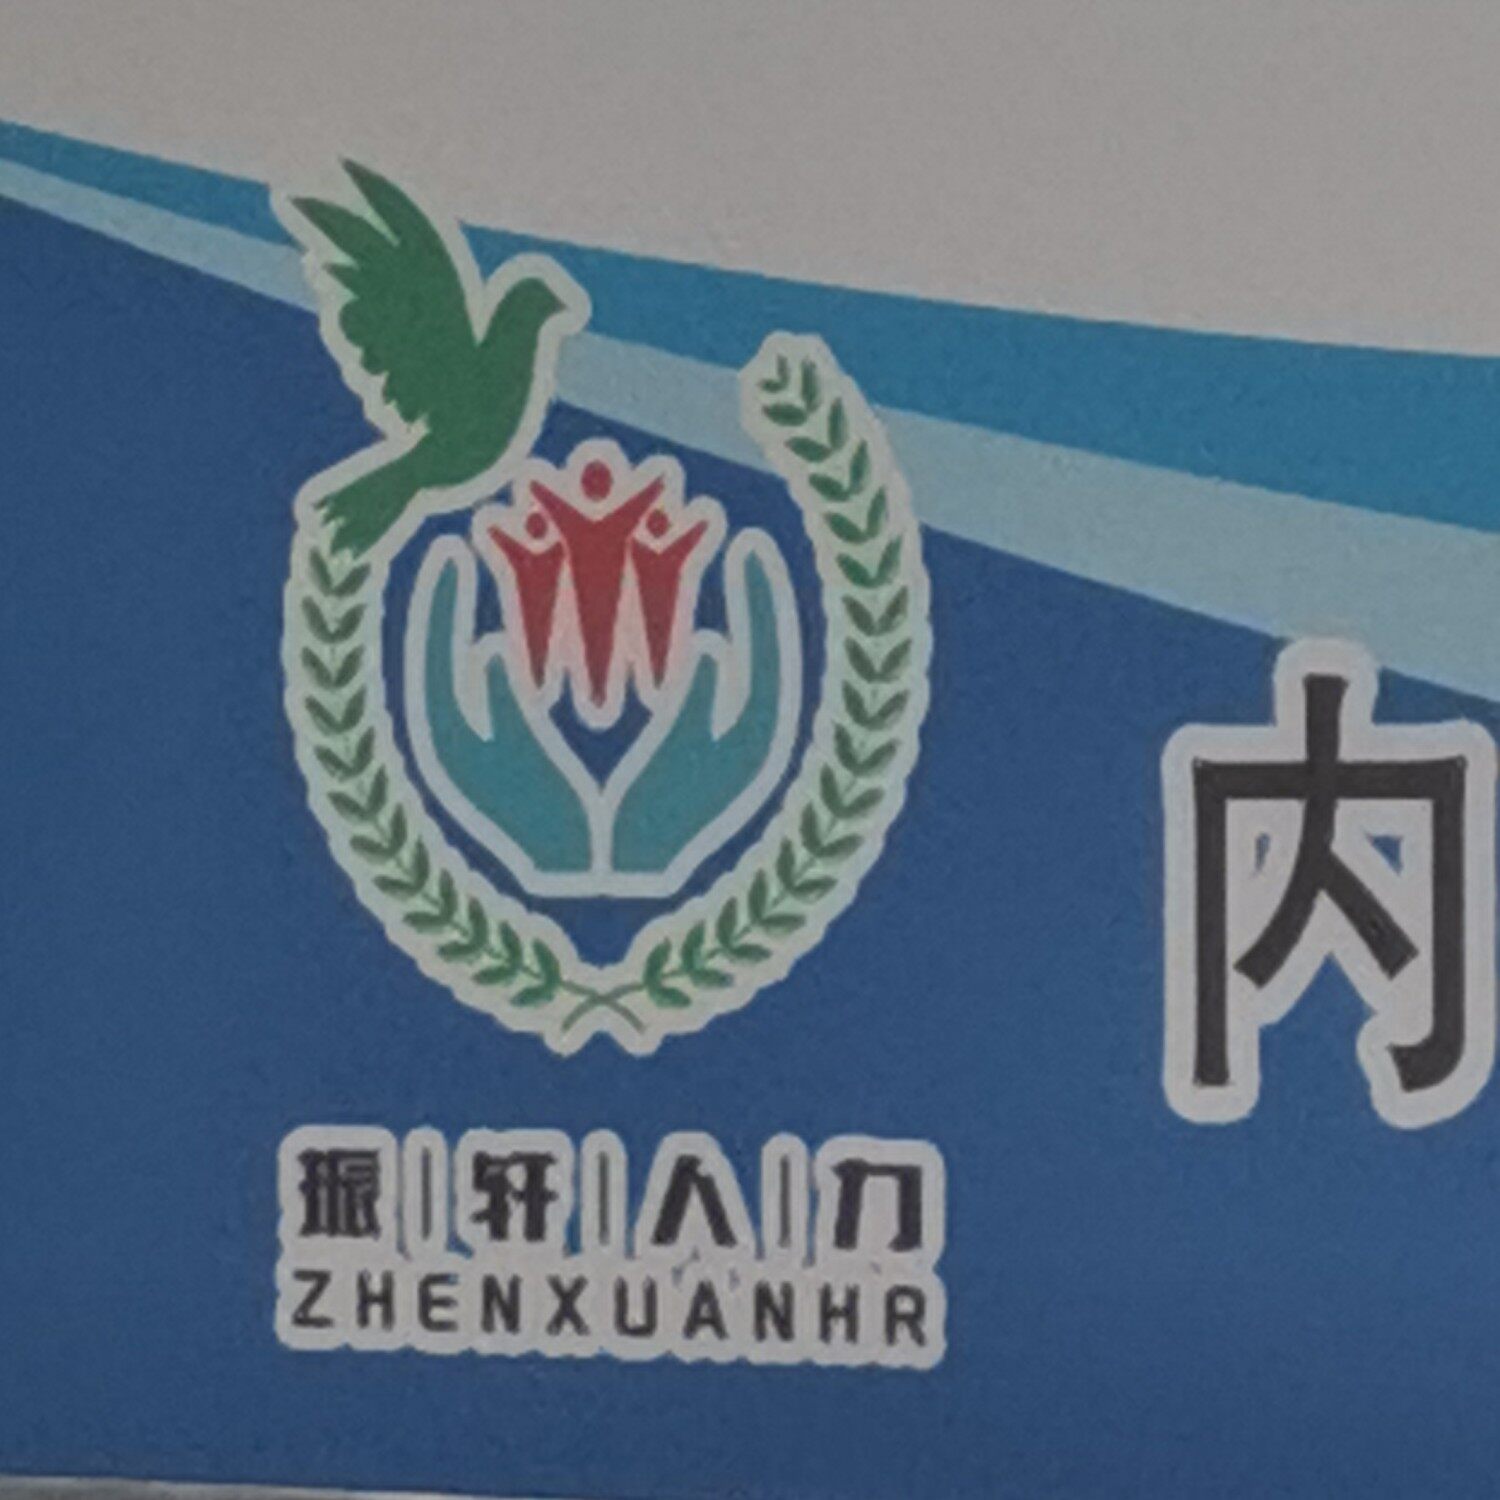 内蒙古振轩人力资源有限公司logo